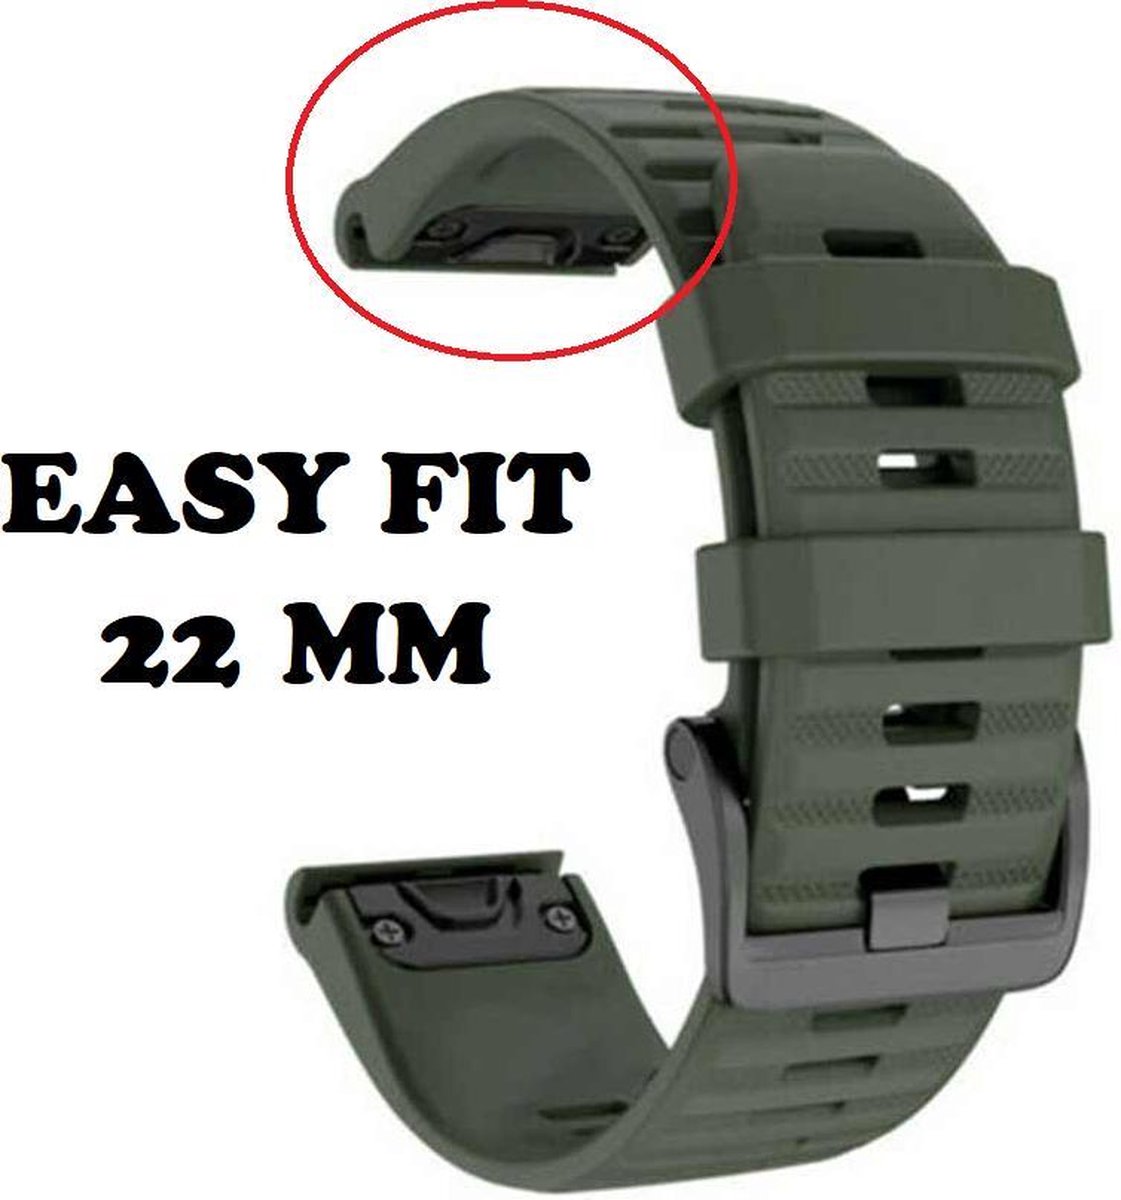 Firsttee - Siliconen Horlogeband - EASY FIT - Voor GARMIN - LEGERGROEN - 22 MM - Horlogebandjes - Sporthorloge - Easy Click - Garmin - S60 - S62 - Fenix 5 - Forerunner 935 - Fenix 6 (Pro) - Horloge bandje - Golfkleding - Golf accessoires - Cadeau - Firsttee